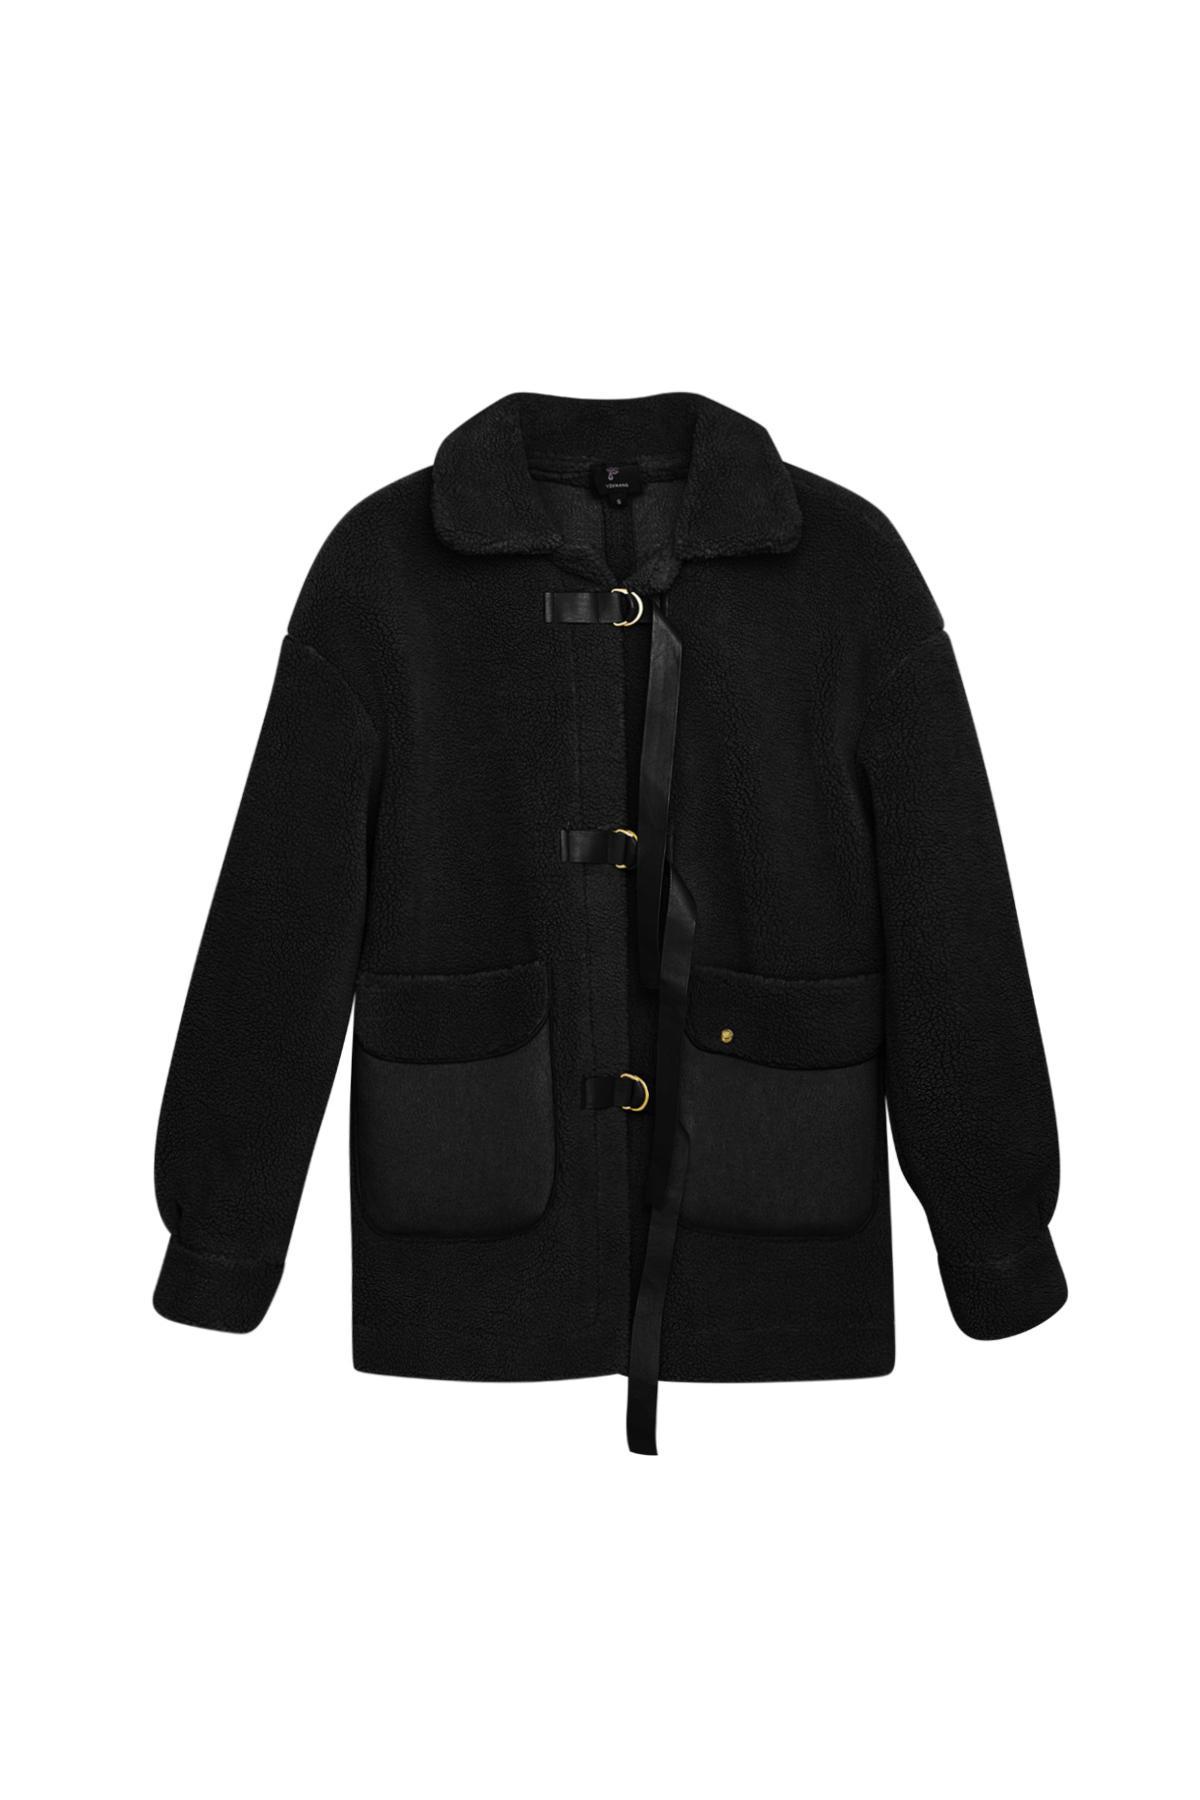 Oyuncak ceket - Siyah Black L h5 